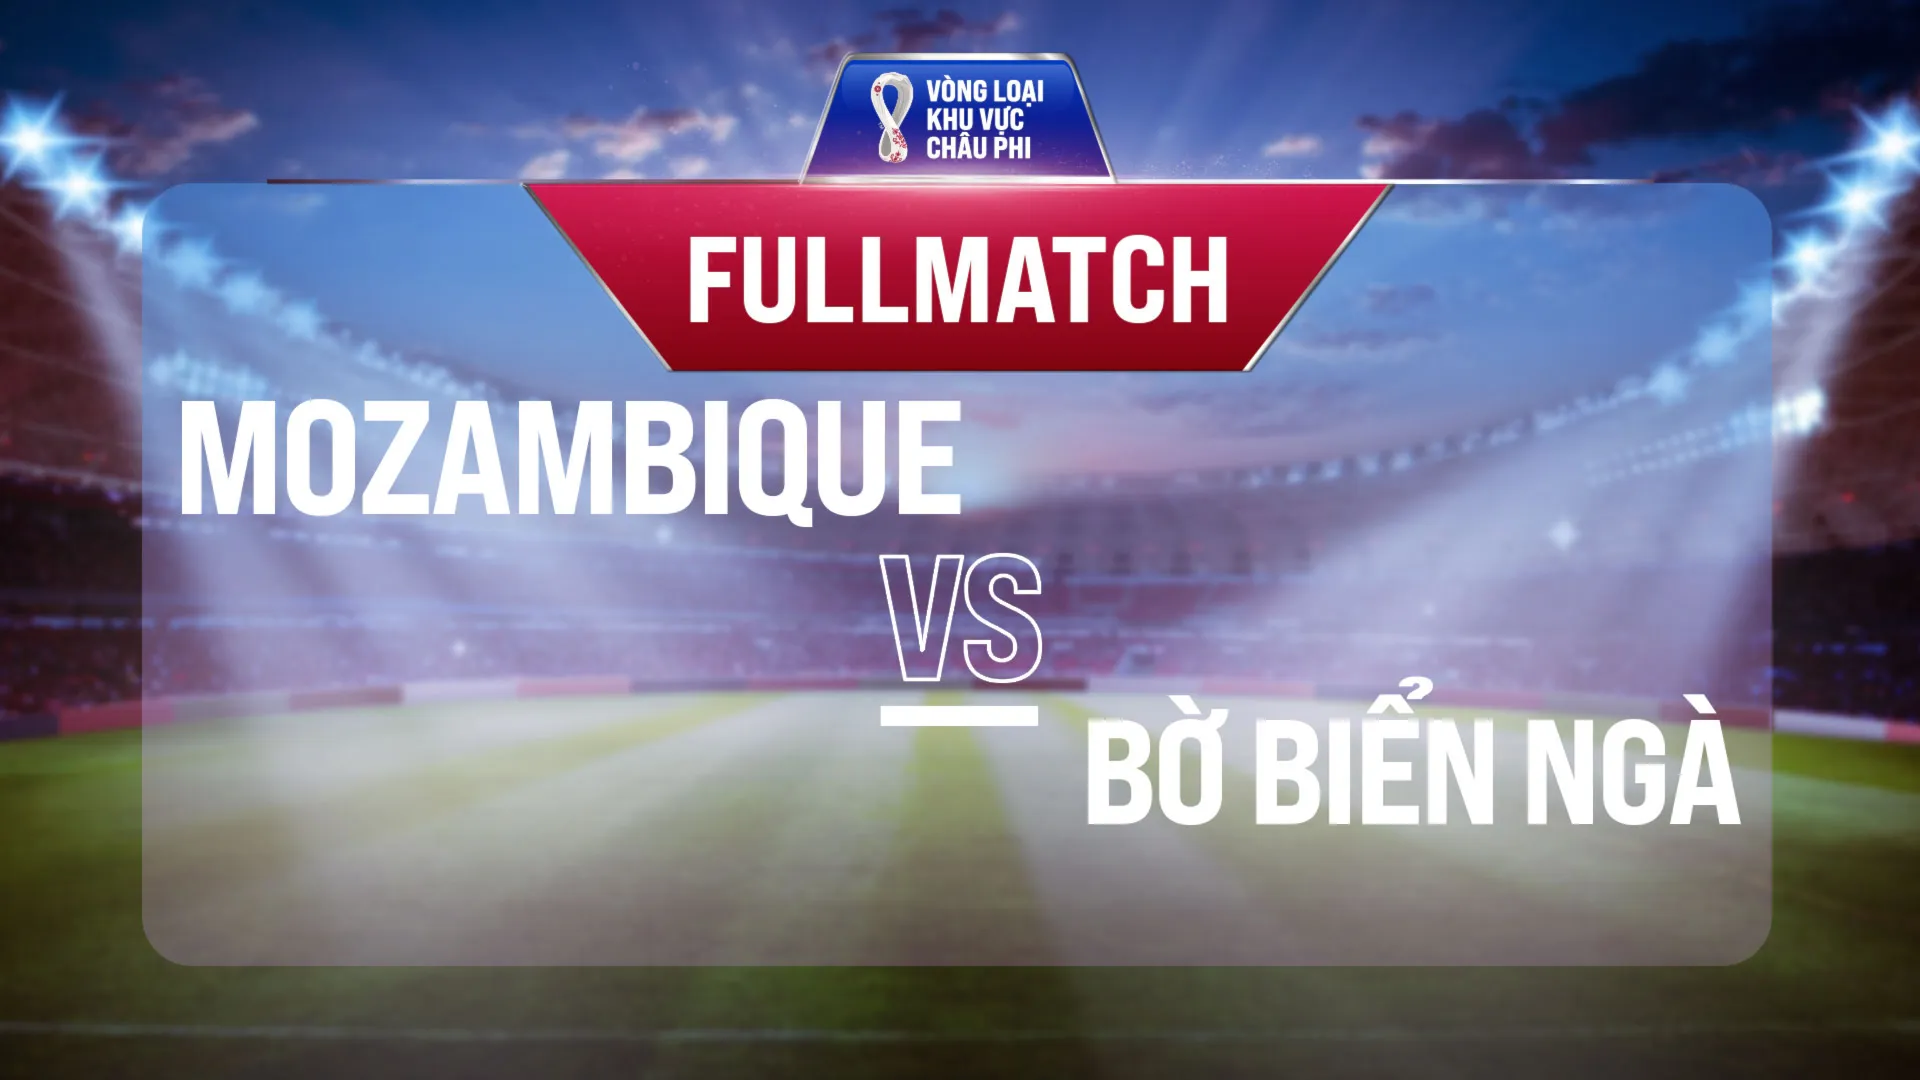 Full match Mozambique - Bờ Biển Ngà (Vòng Loại World Cup 2022 - Khu vực châu Phi)